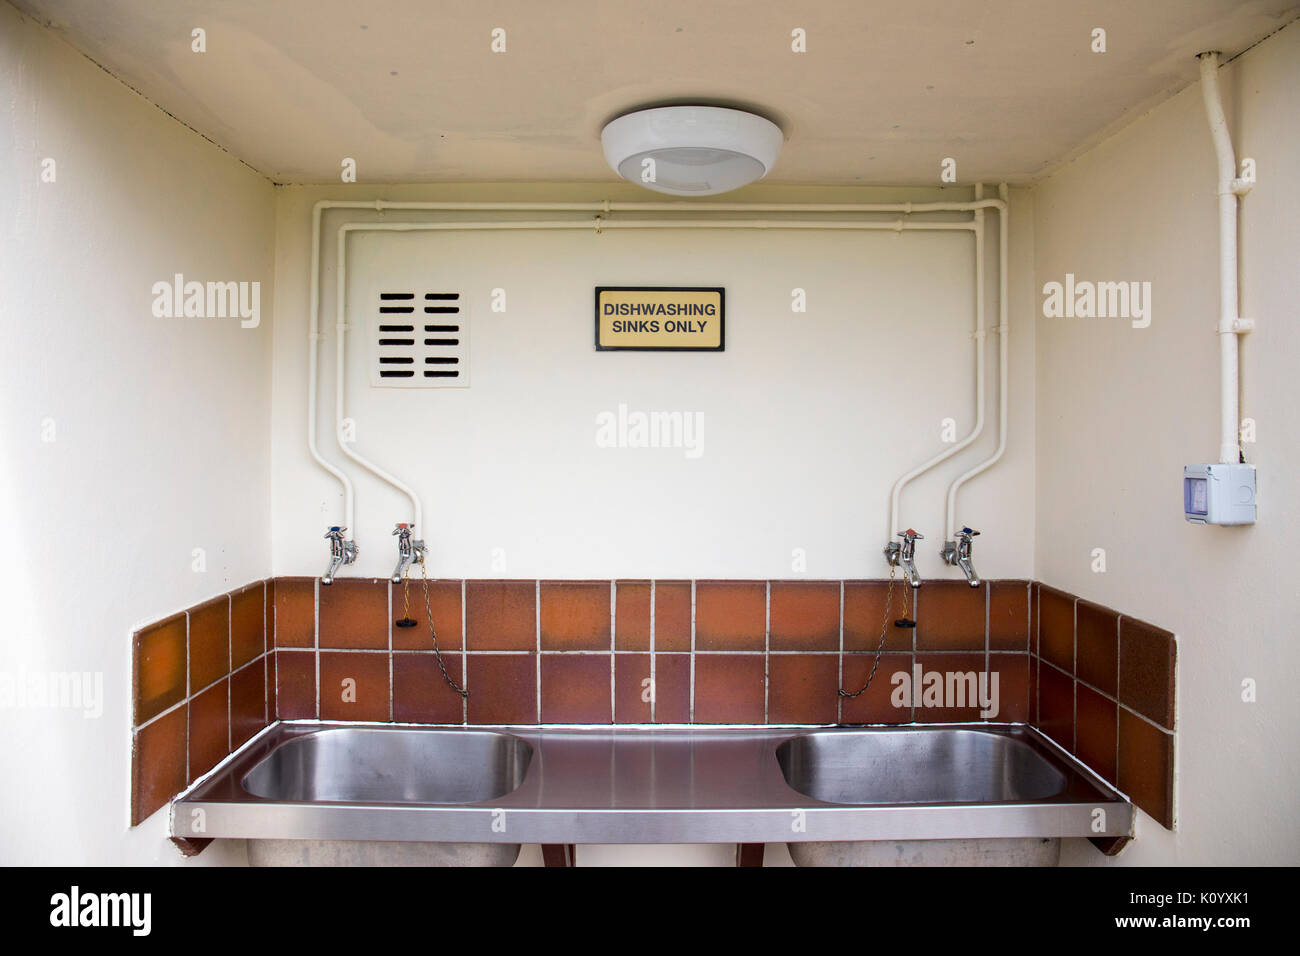 Dishwashing sinks on campsite UK Stock Photo